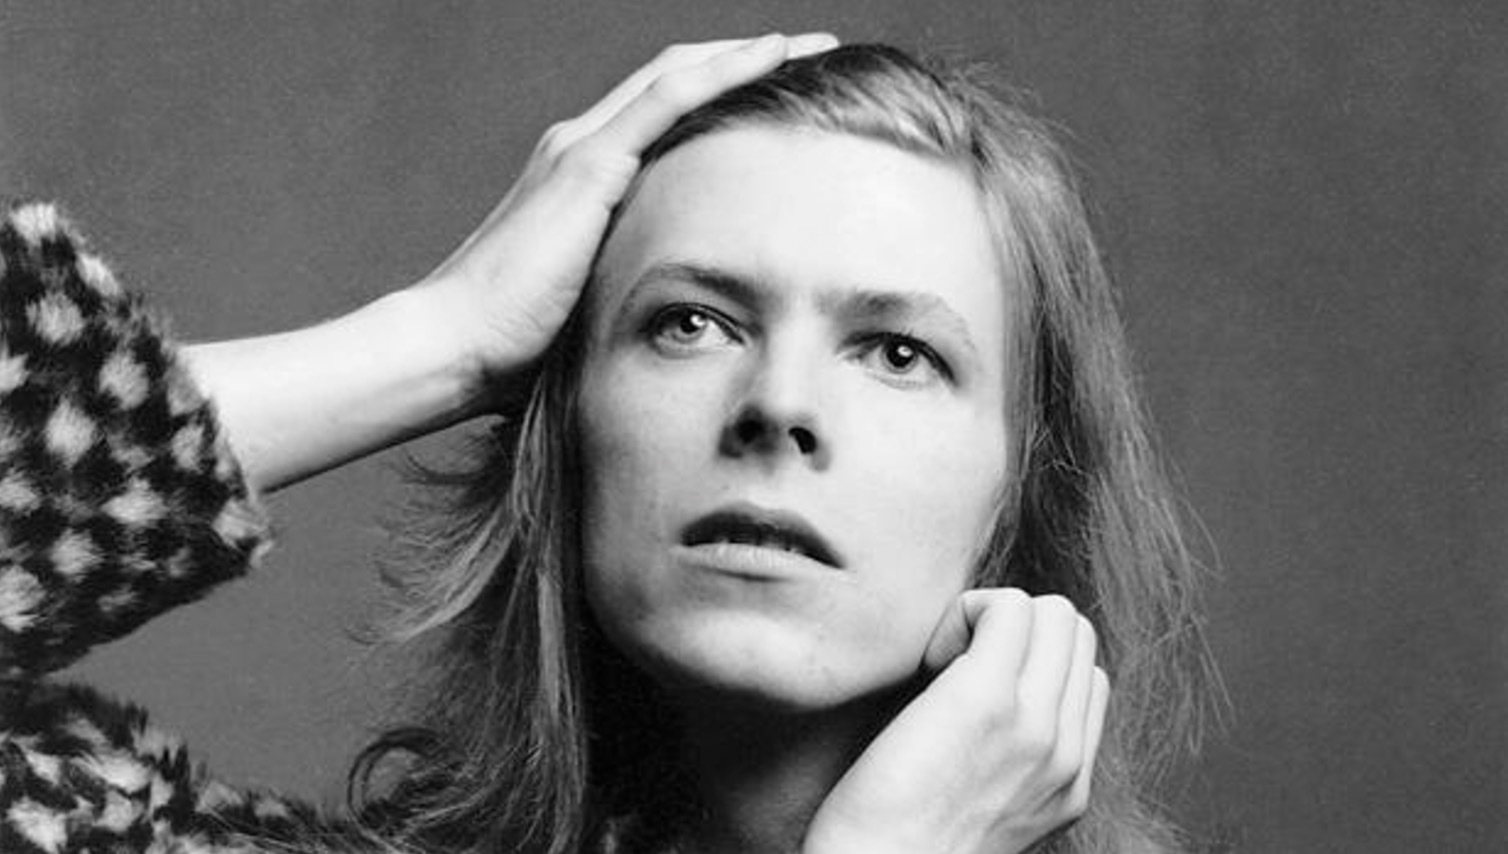 David Bowie var fascinerad av stjärnor. Ziggy Stardust var först av alla fantastiska ikoner att lämna jordelivet 2016